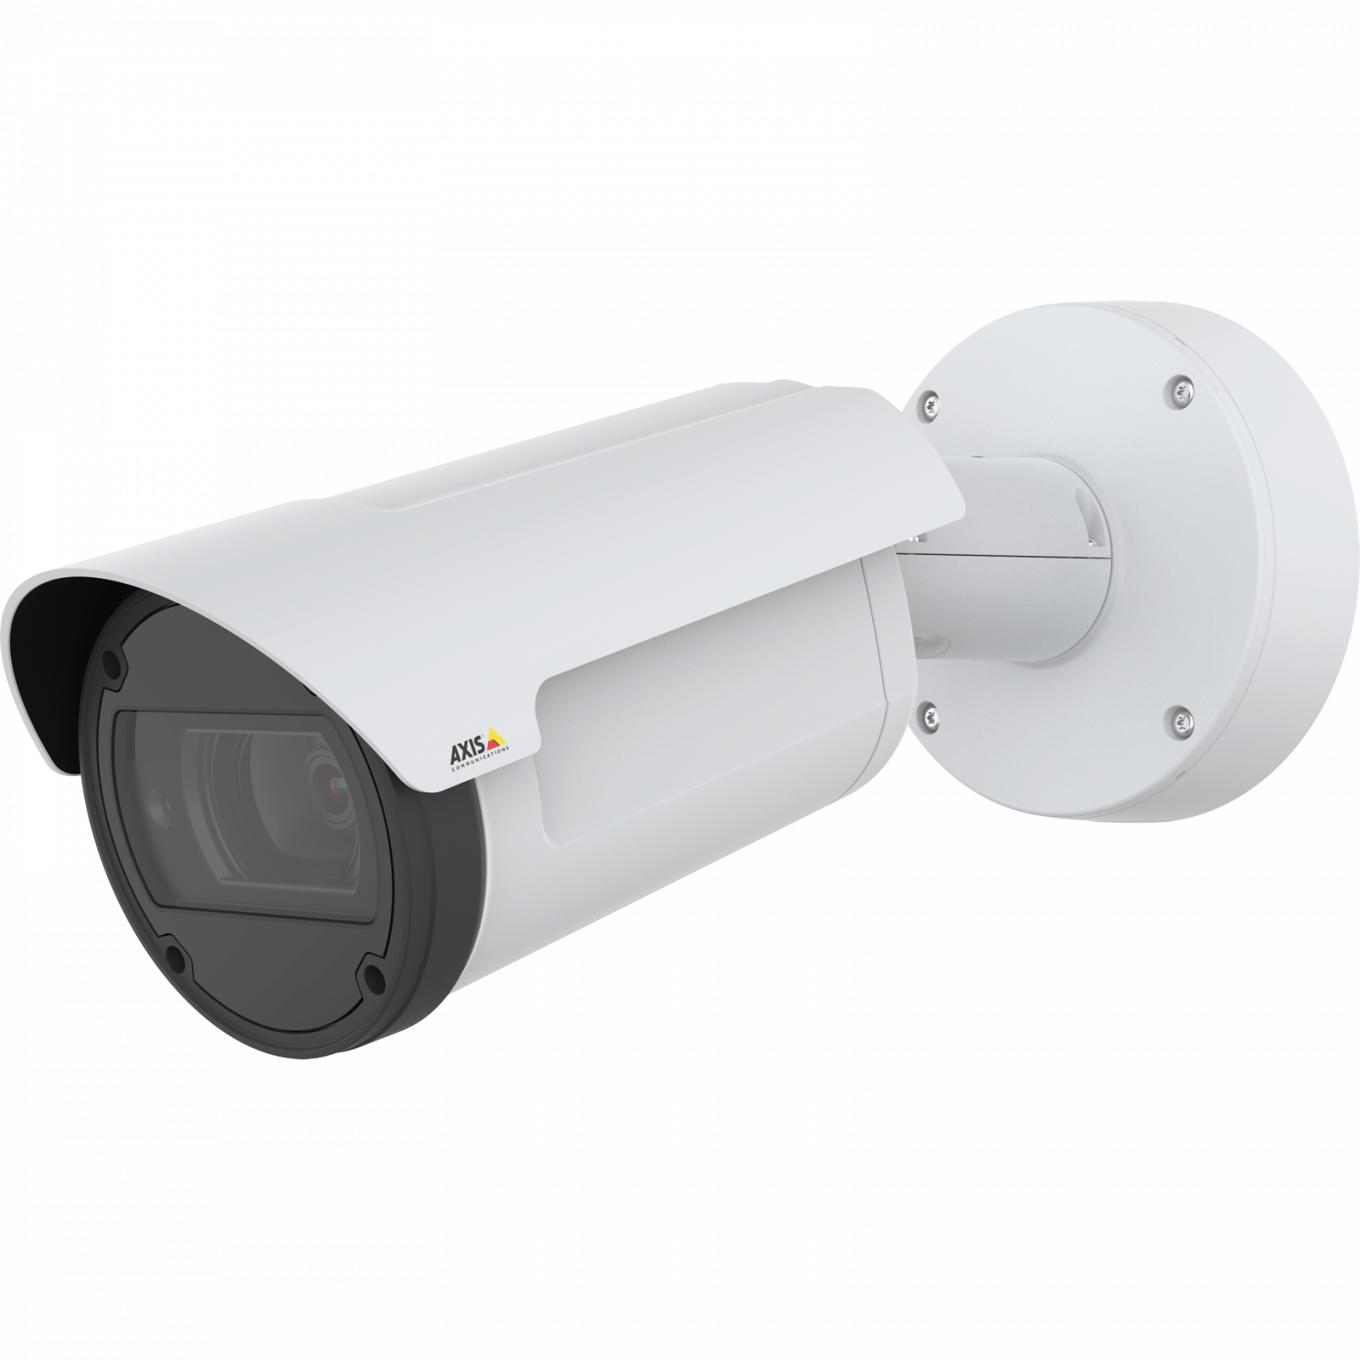 La AXIS Q1798-LE IP Camera tiene Zipstream y Lightfinder. El producto se muestra desde el ángulo izquierdo.